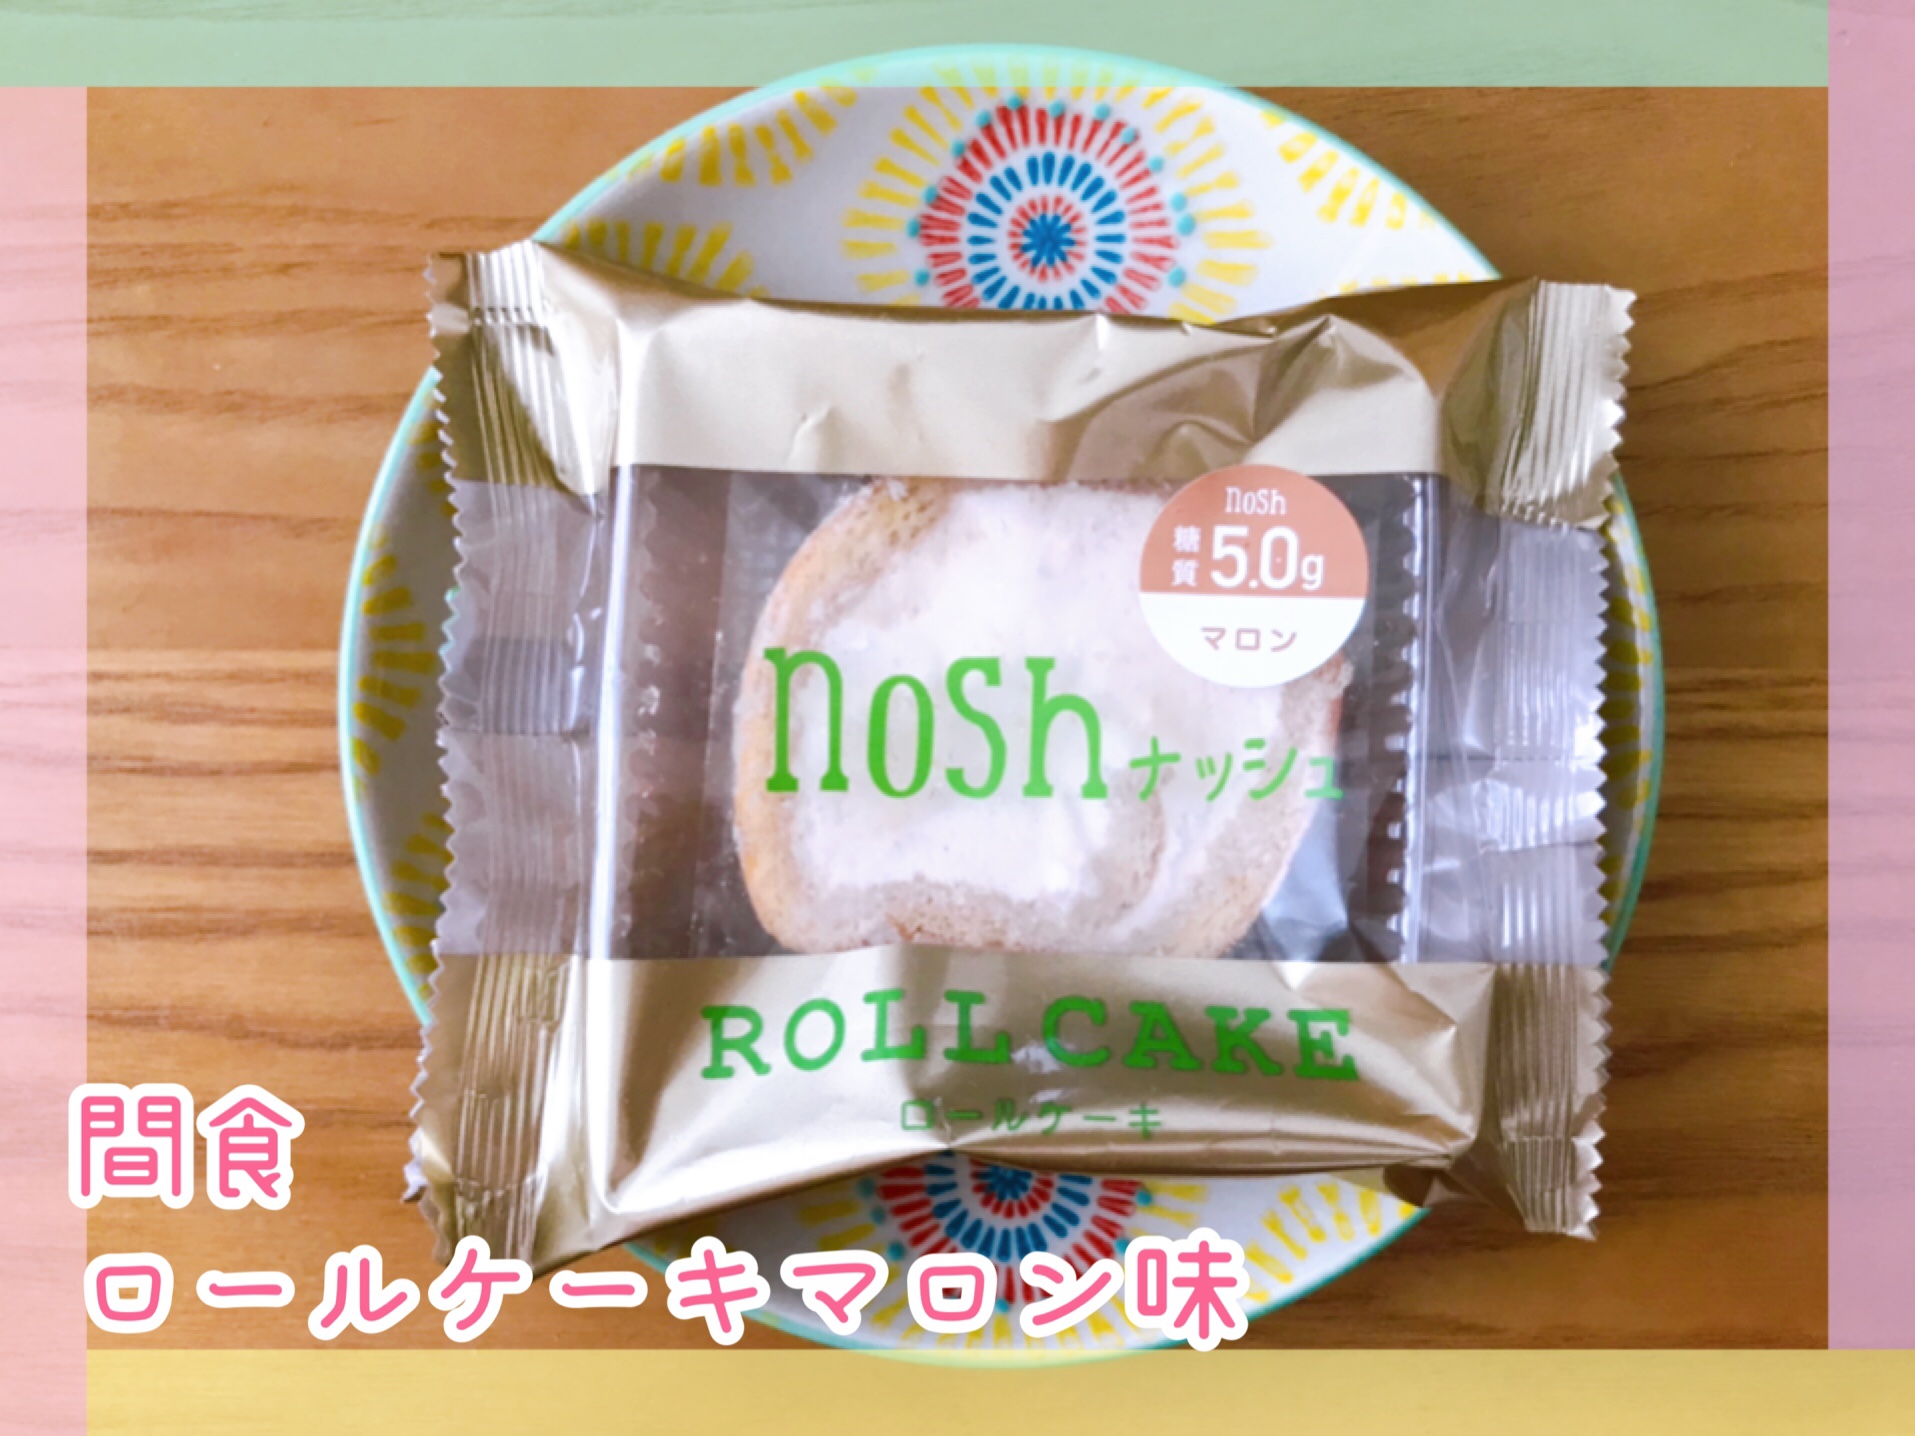 inosh(ナッシュ)ダイエット